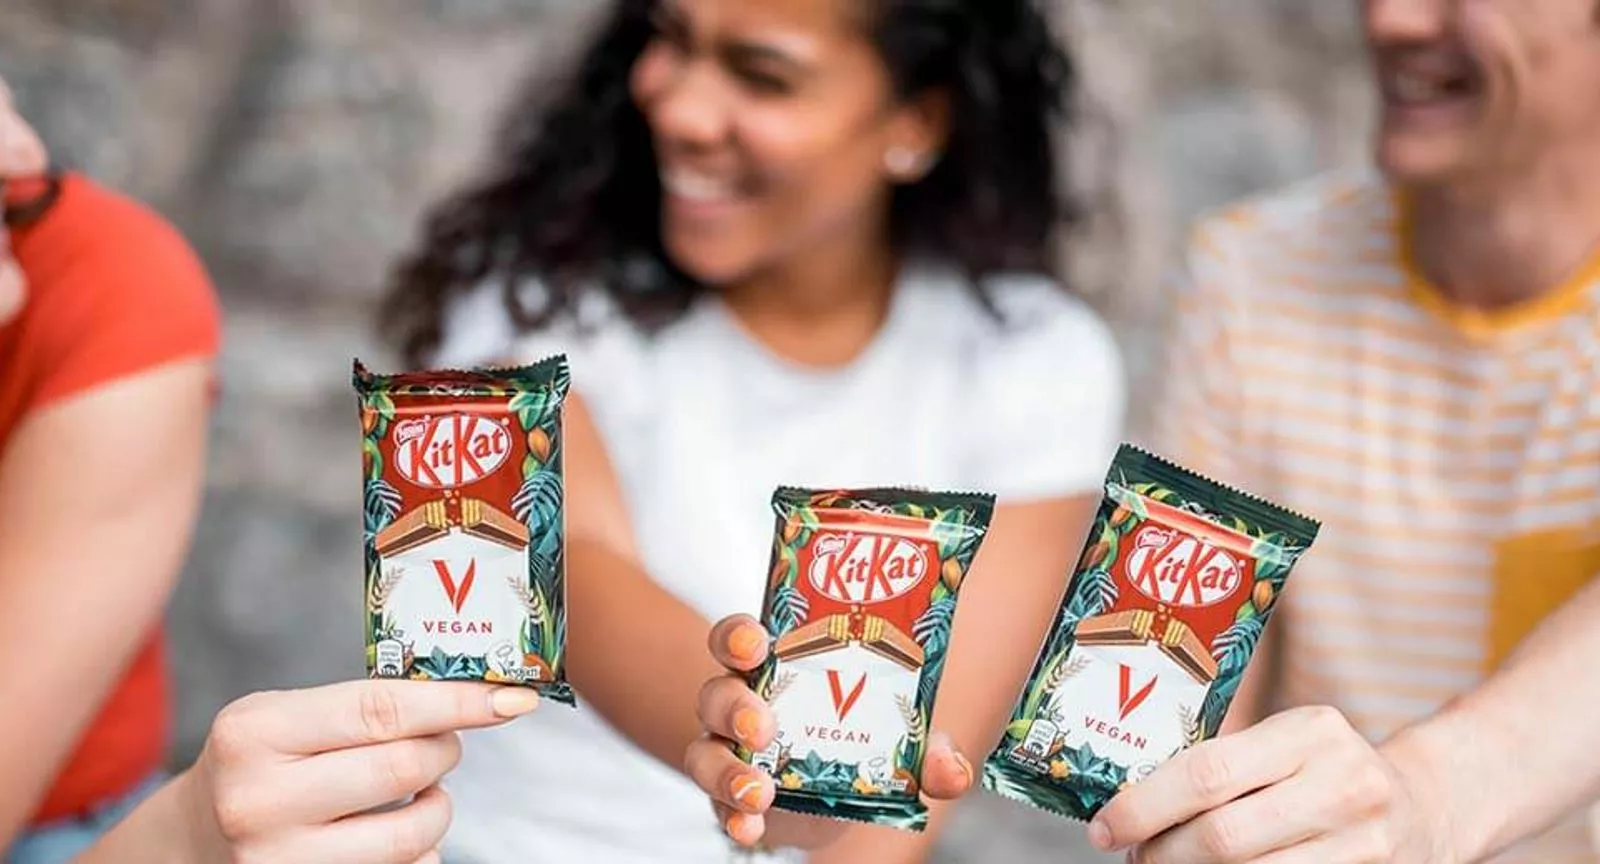 Nestlé ra mắt KitKat thuần chay